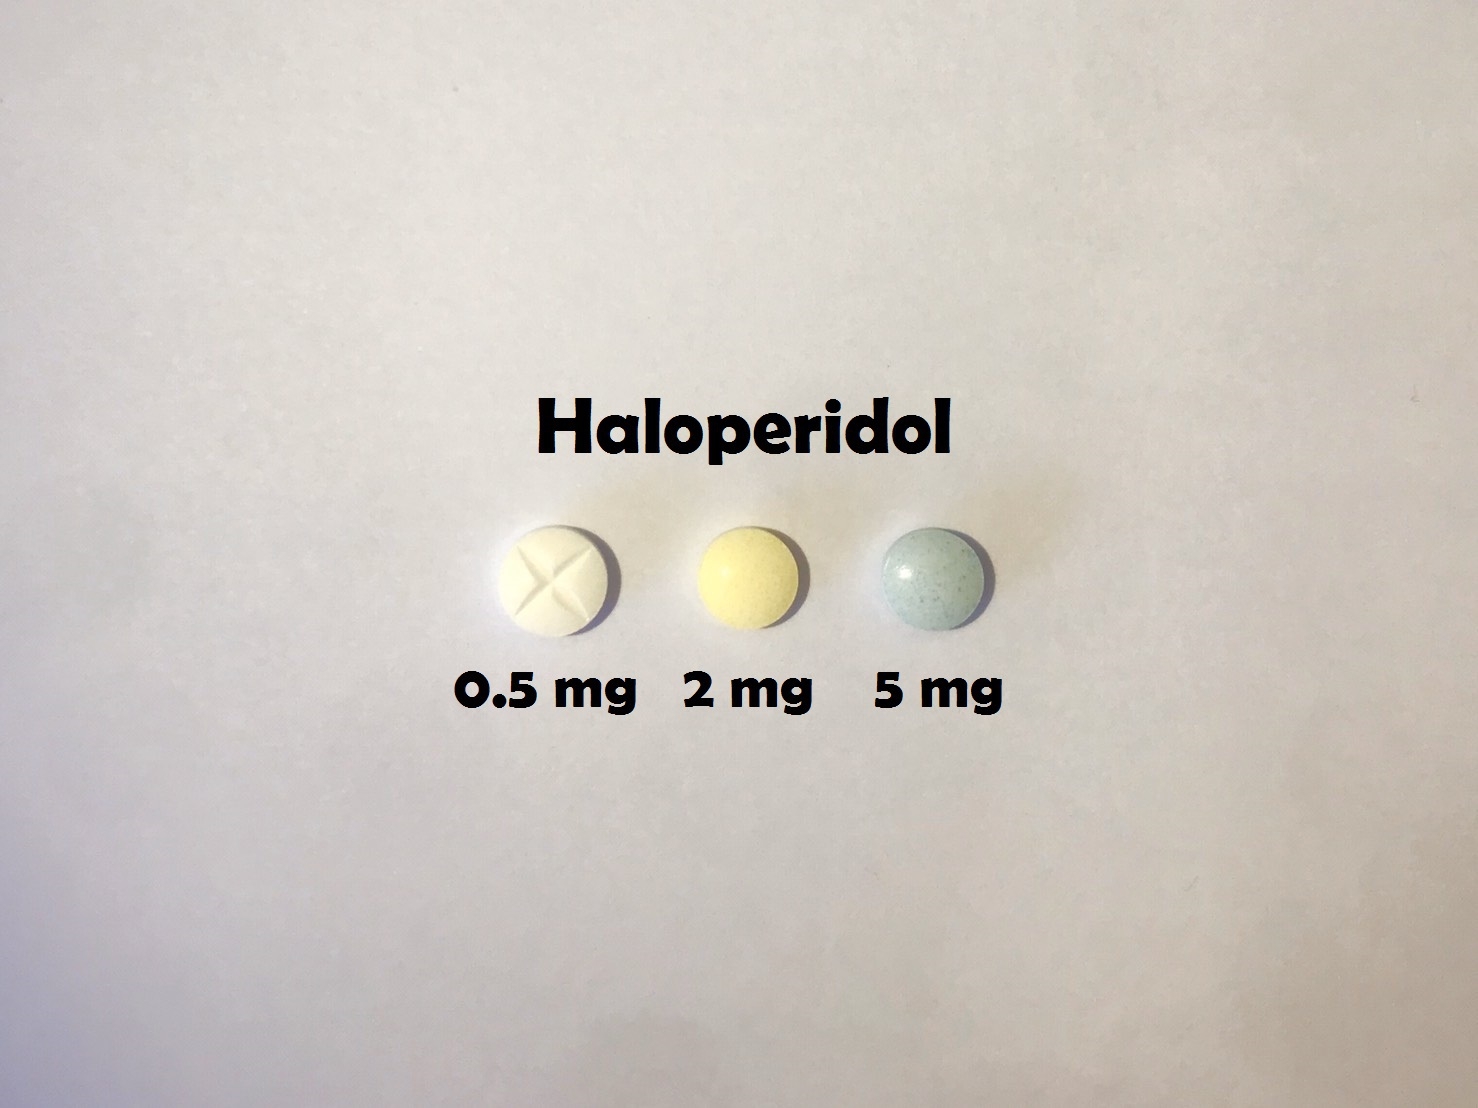 ยาที่มีหลายความแรง : Haloperidol 0.5 mg, 2 mg และ 5 mg